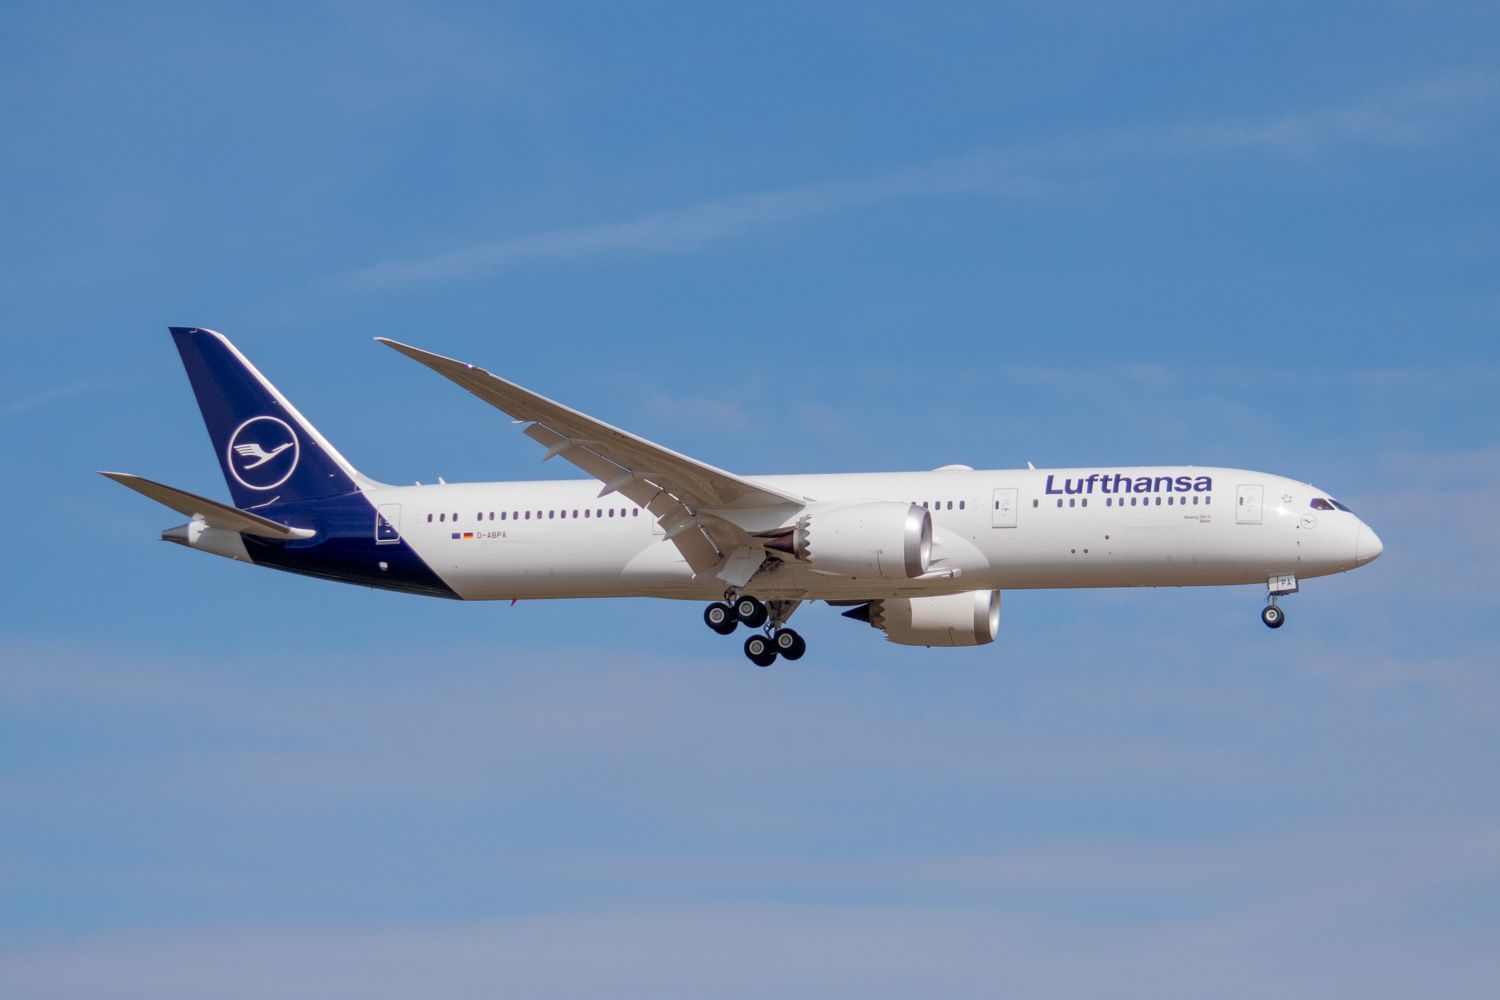 Lufthansa Boeing 787 landing in Frankfurt